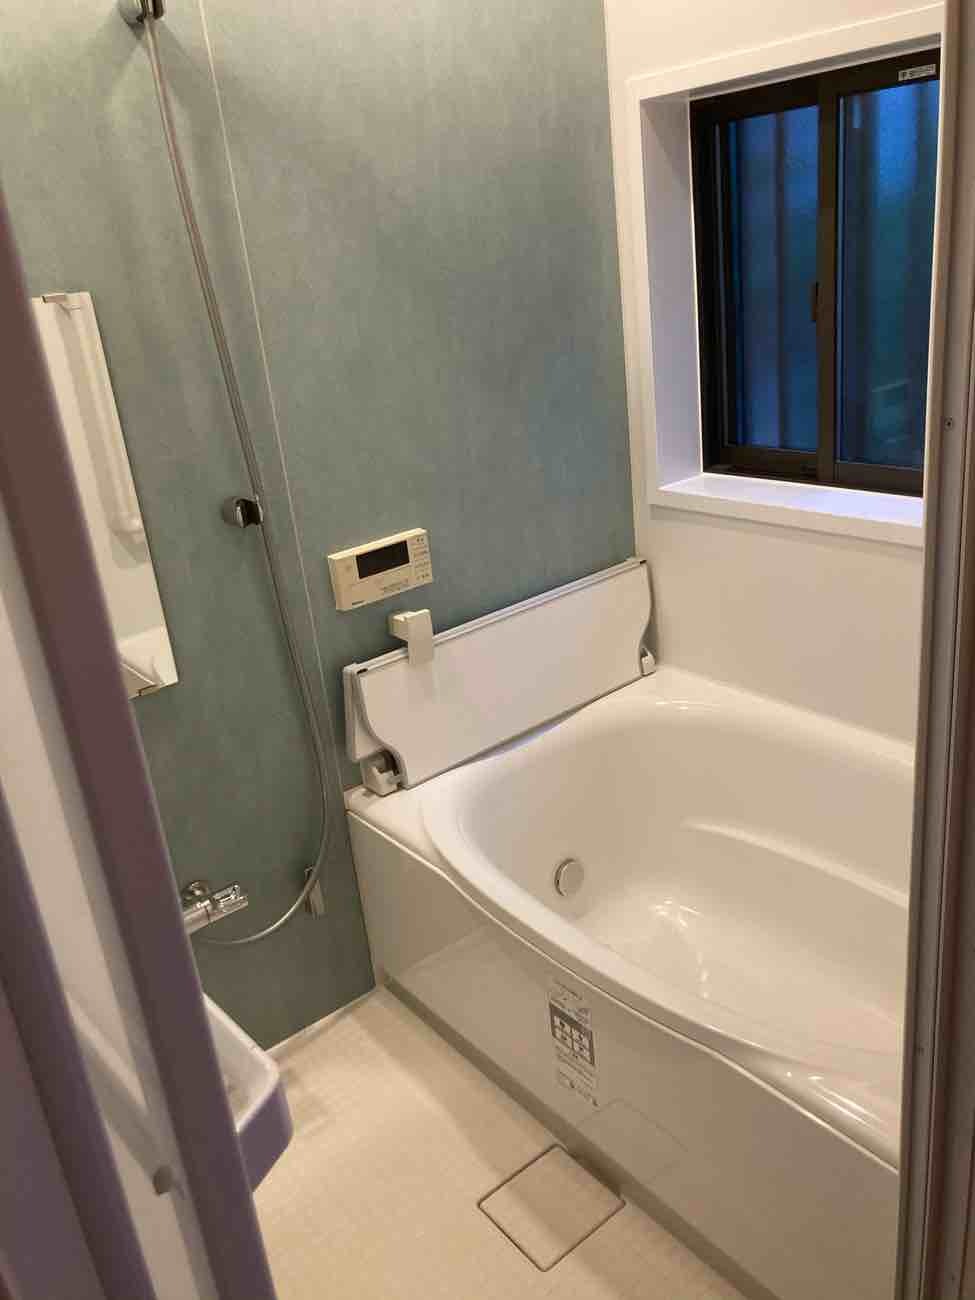 【埼玉県三郷市】S様邸タイル浴室改修ユニットバス工事が完了しました。リクシル LIXIL リデア 画像